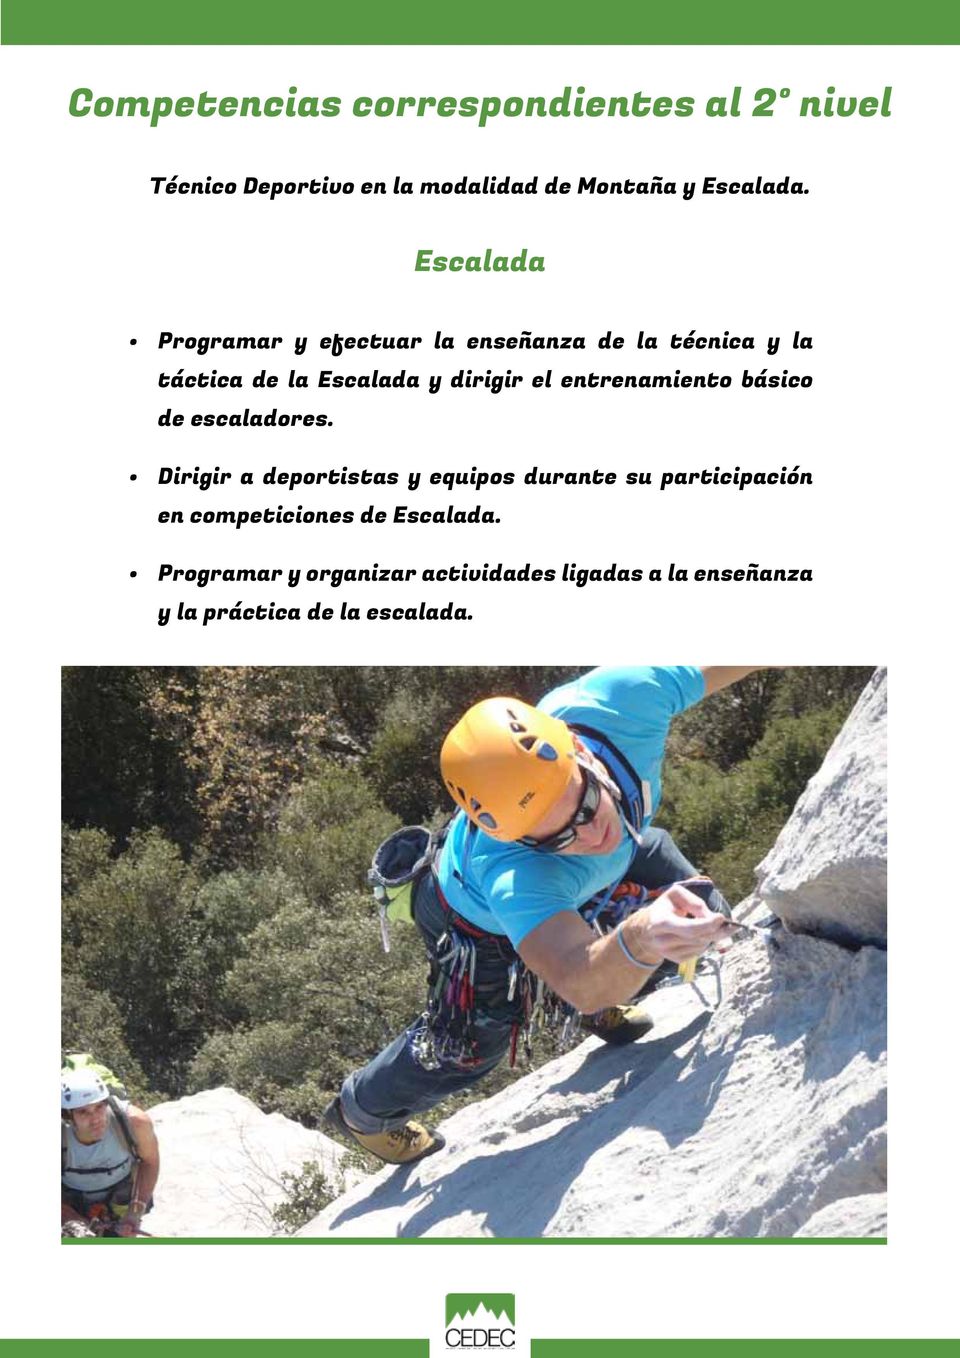 entrenamiento básico de escaladores.